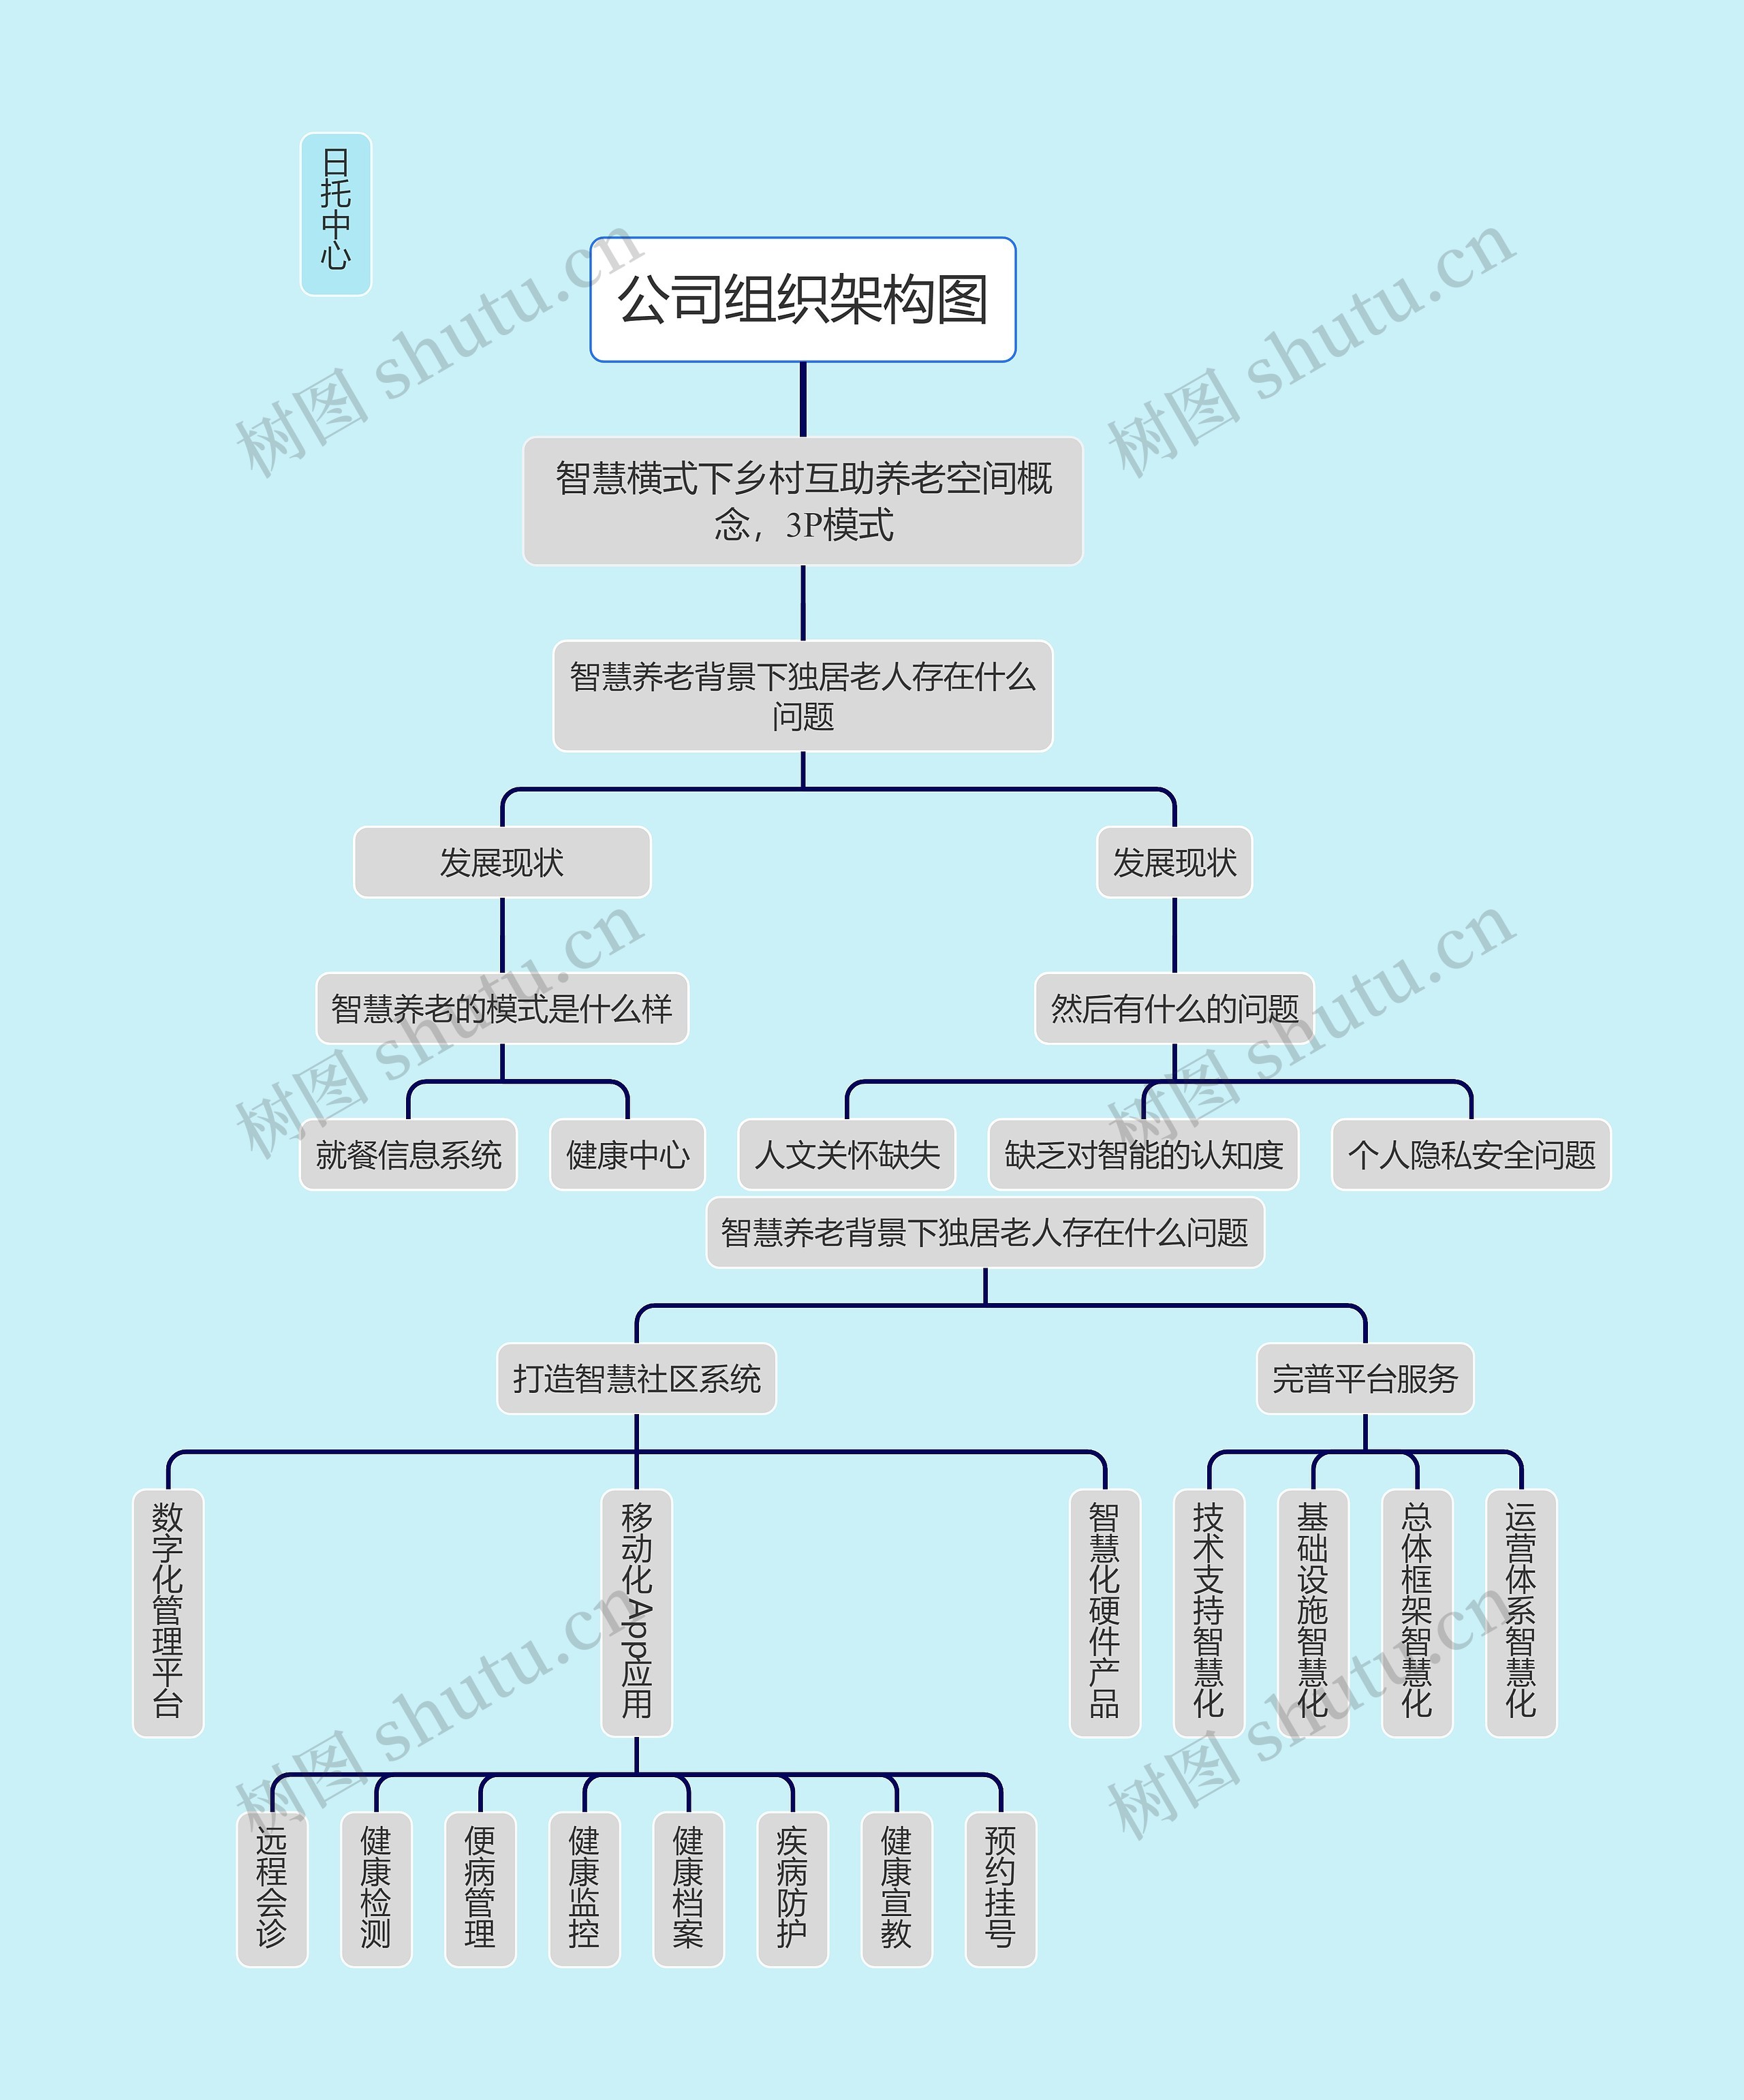 日托中心公司组织架构图